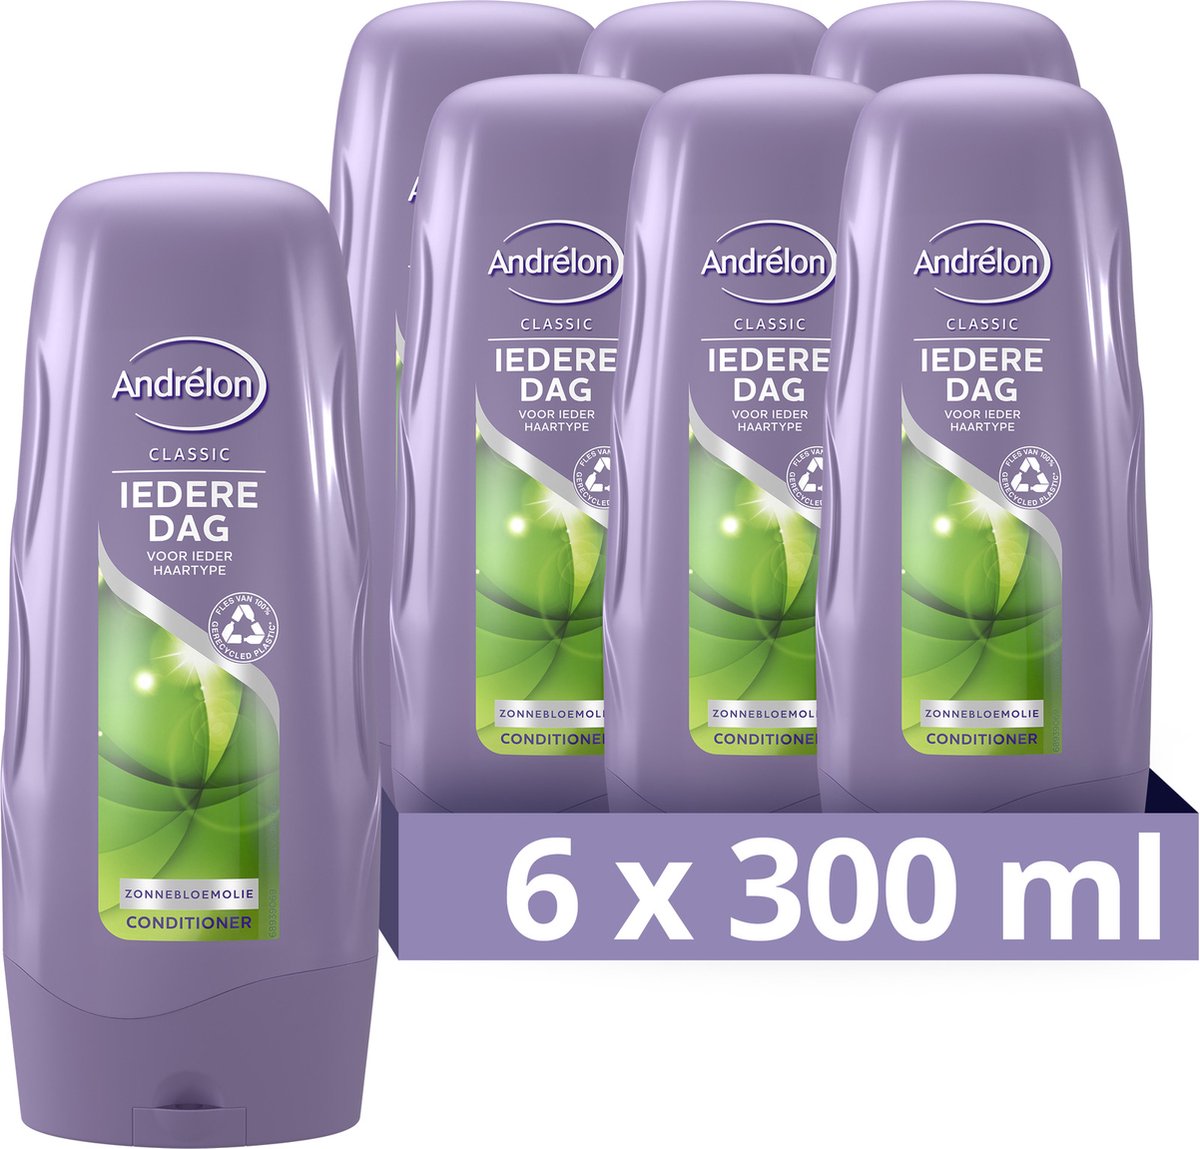 Andrélon Classic Iedere Dag Conditioner - 6 x 300 ml - Voordeelverpakking - Andrélon